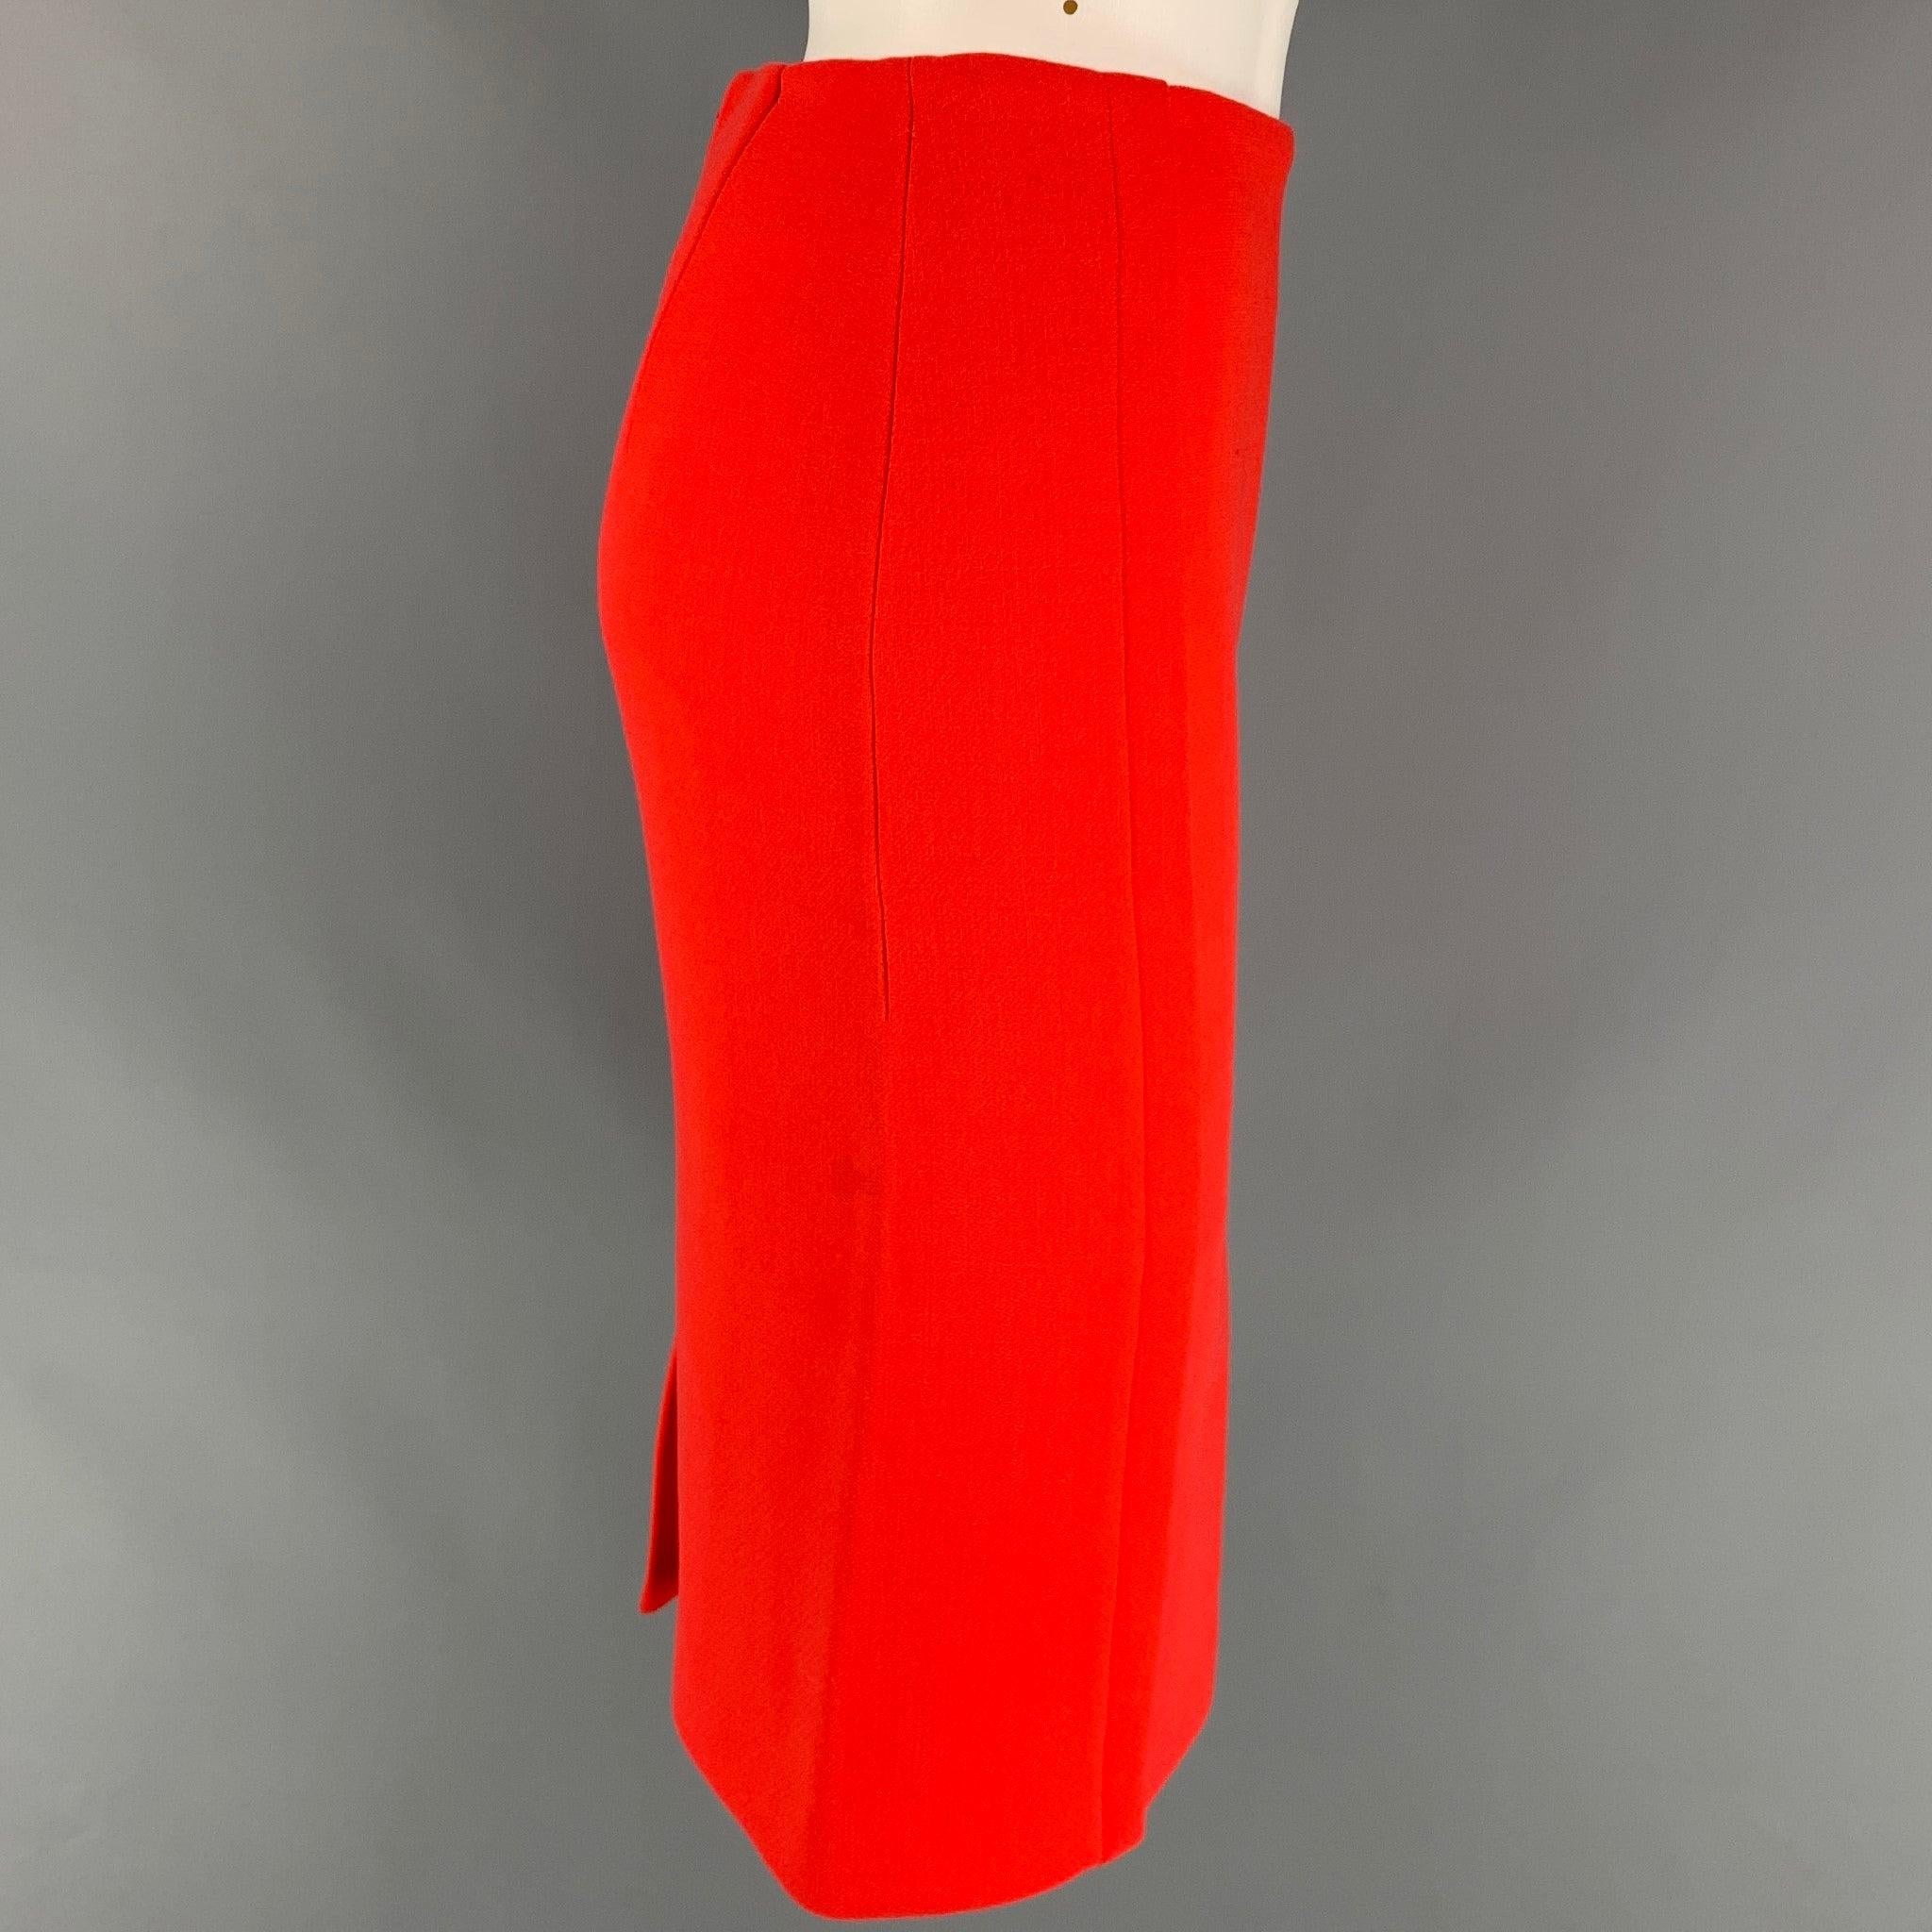 La jupe CALVIN COLLECTION est en laine orange avec une doublure complète. Elle présente un style crayon, une taille haute, une simple fente au dos et une fermeture à glissière au dos. Fabriquées en Italie.
Très bien
Etat d'occasion. 

Marqué :  